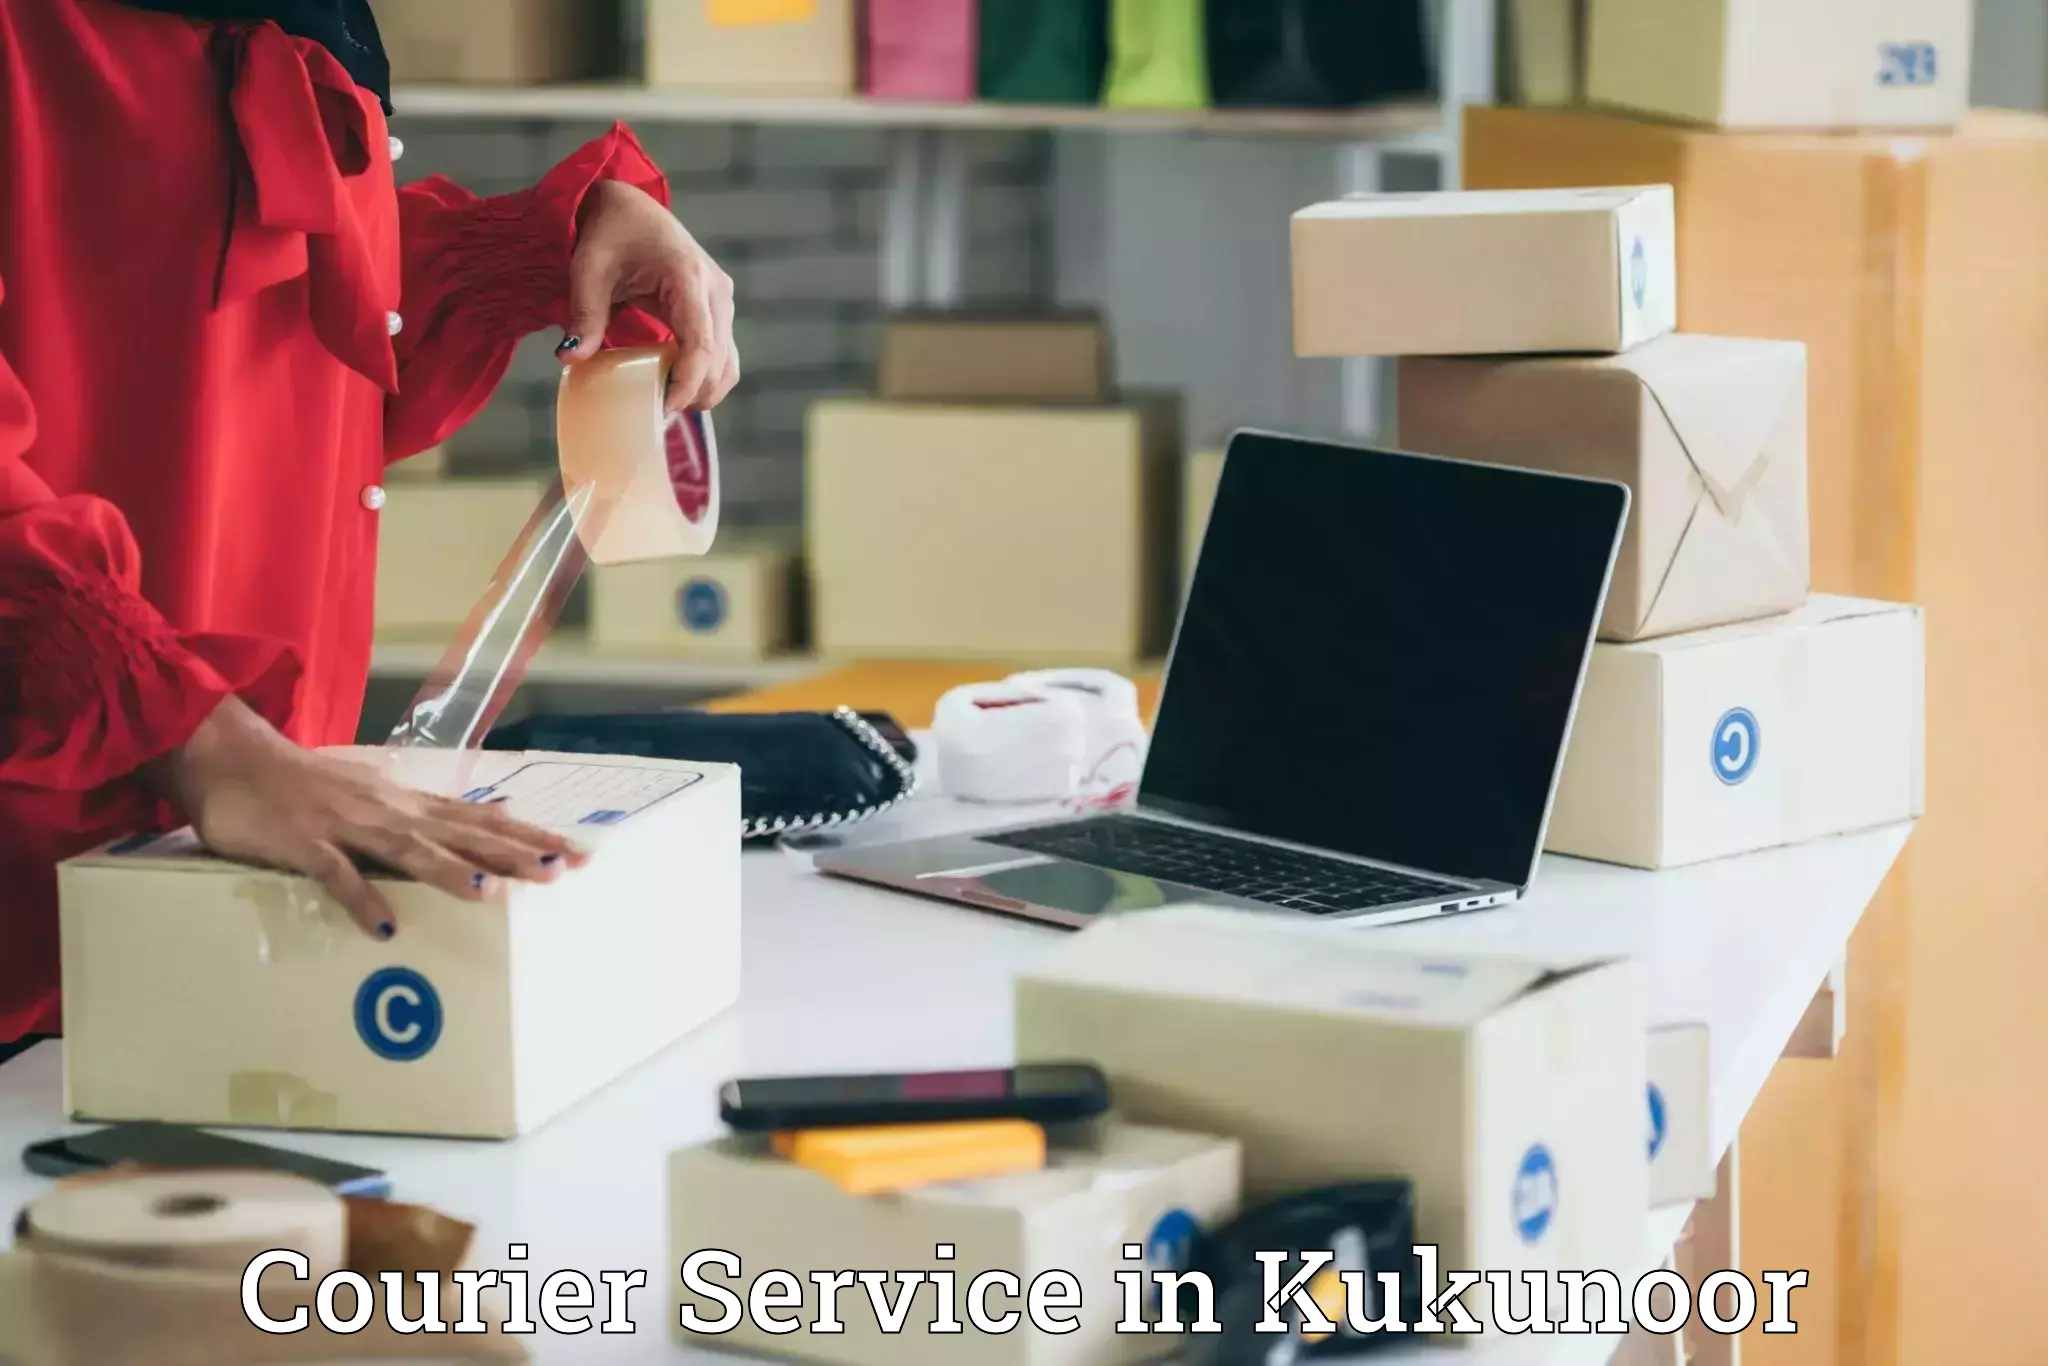 Corporate courier solutions in Kukunoor